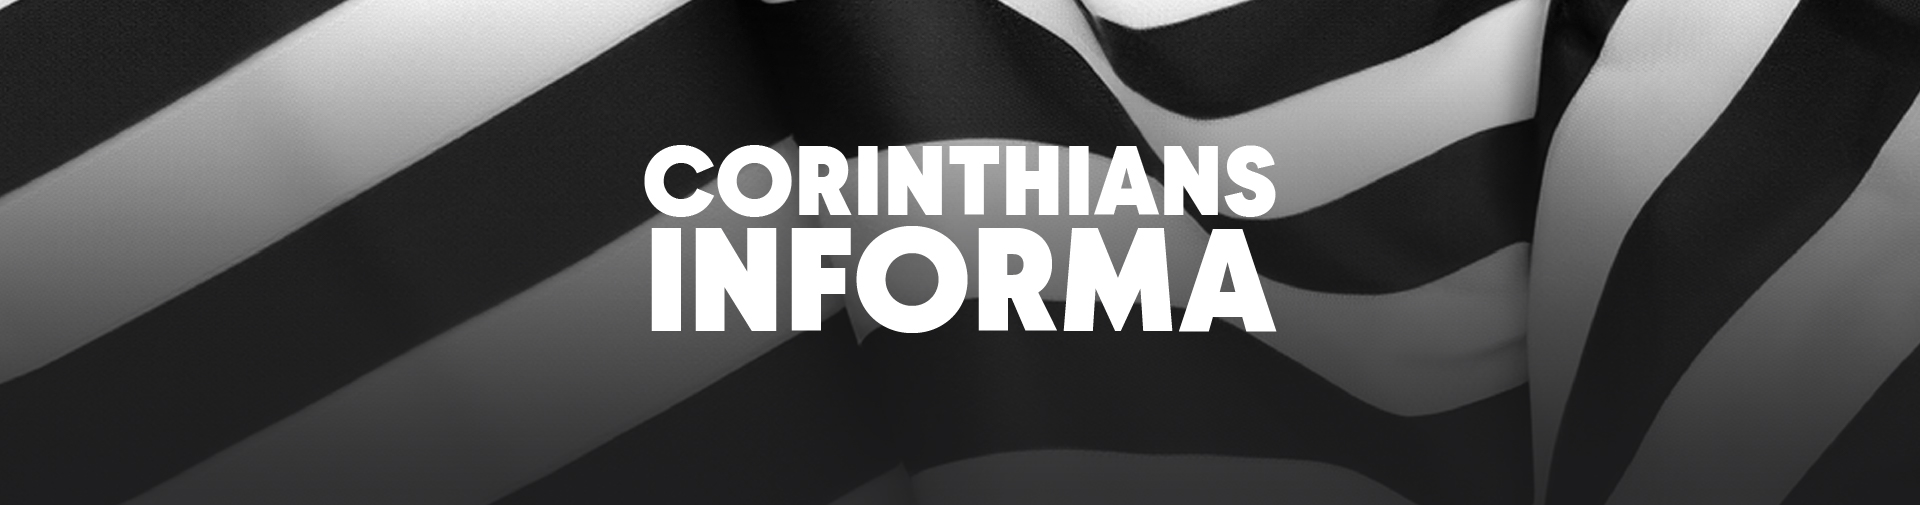 Corinthians Informa: sobre negociação de patrocínio